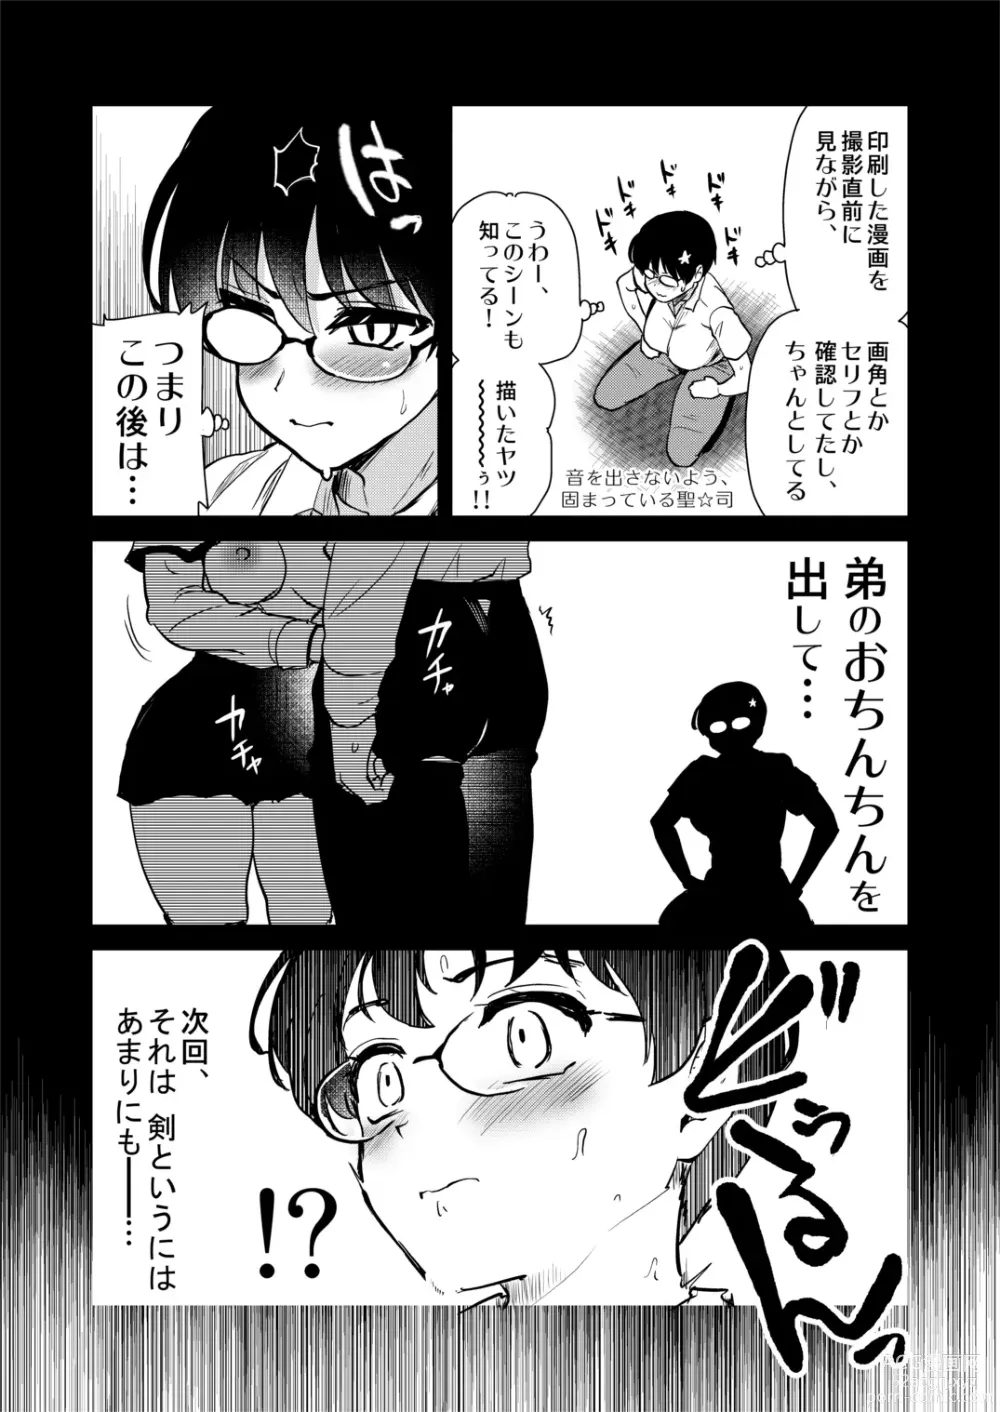 Page 17 of doujinshi Jibun no Kaita Manga ga Jissha AV ni!? Sekkaku nano de Satsuei Genba no Kengaku ni Ittekimashita.